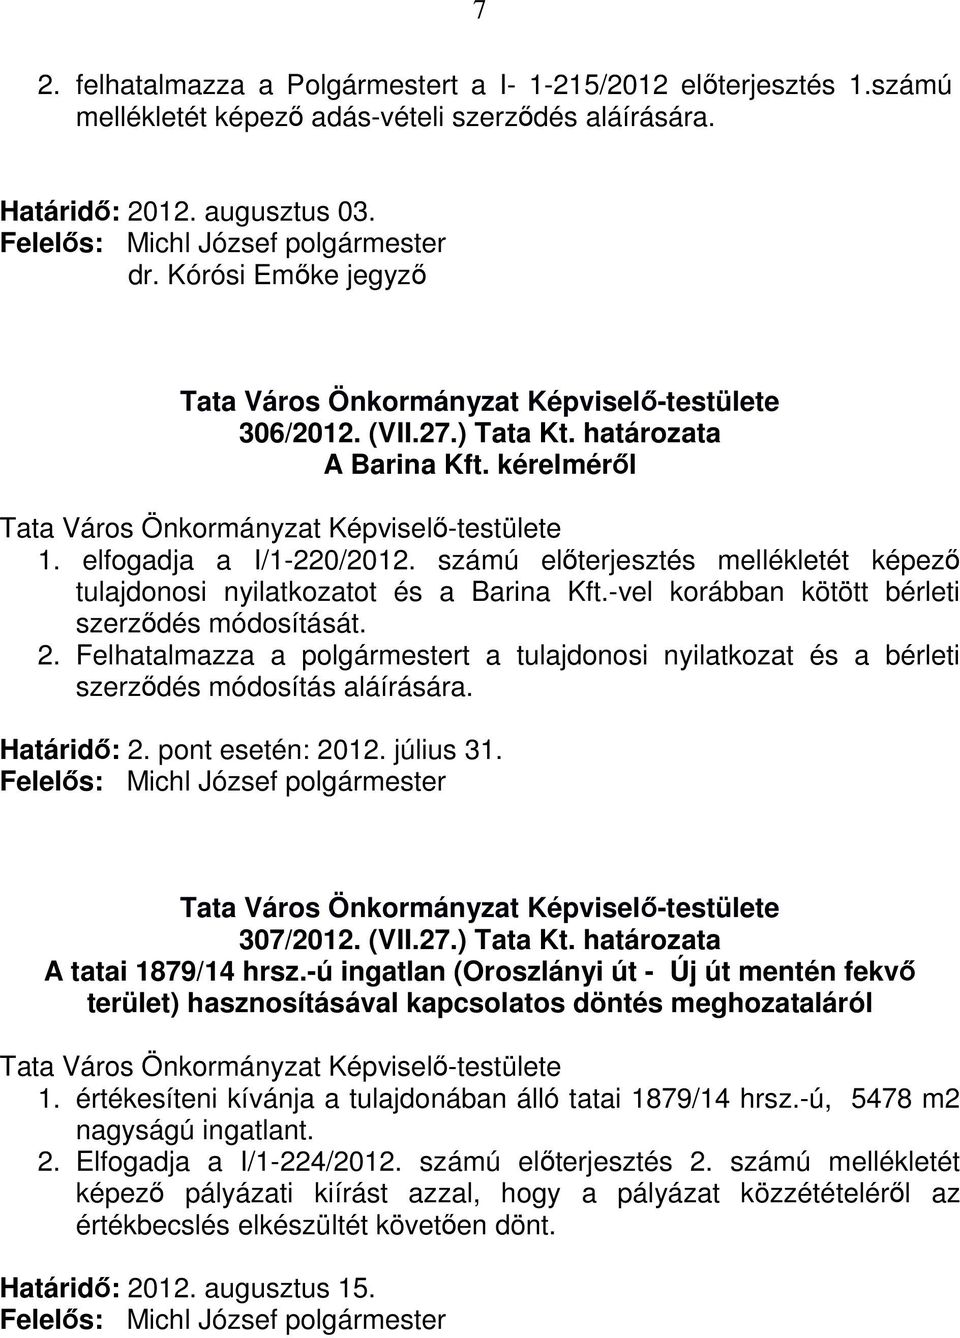 Felhatalmazza a polgármestert a tulajdonosi nyilatkozat és a bérleti szerződés módosítás aláírására. Határidő: 2. pont esetén: 2012. július 31. 307/2012. (VII.27.) Tata Kt.